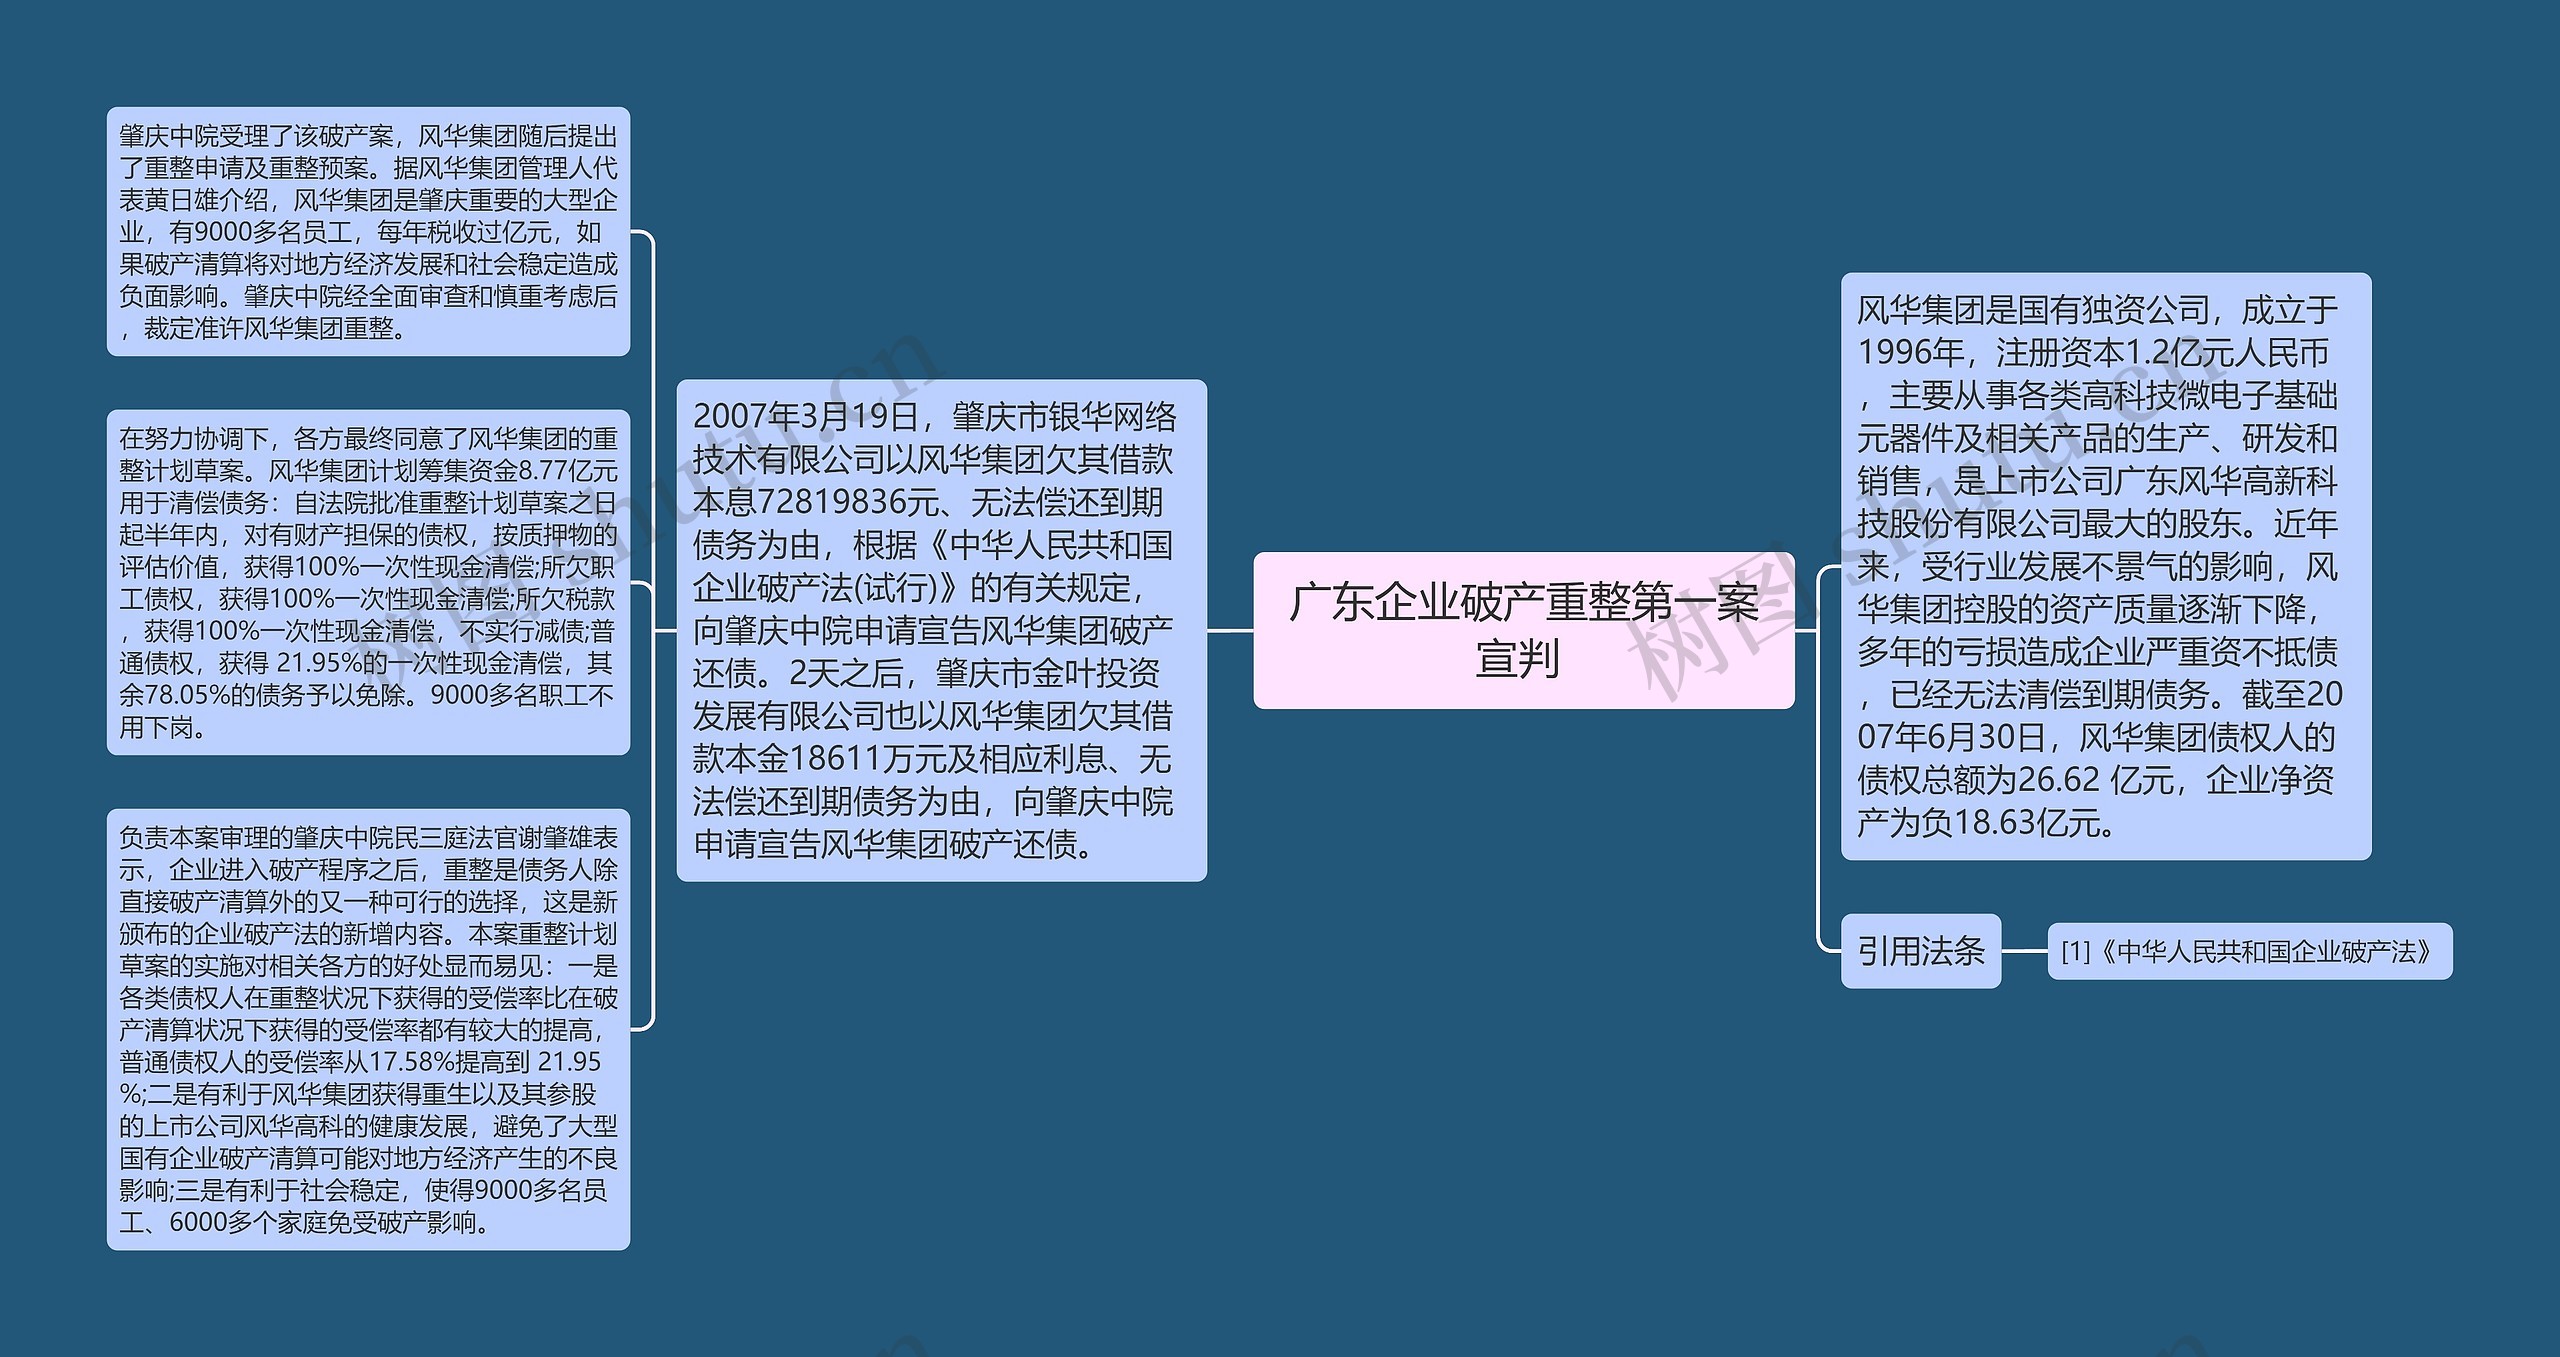 广东企业破产重整第一案宣判 思维导图